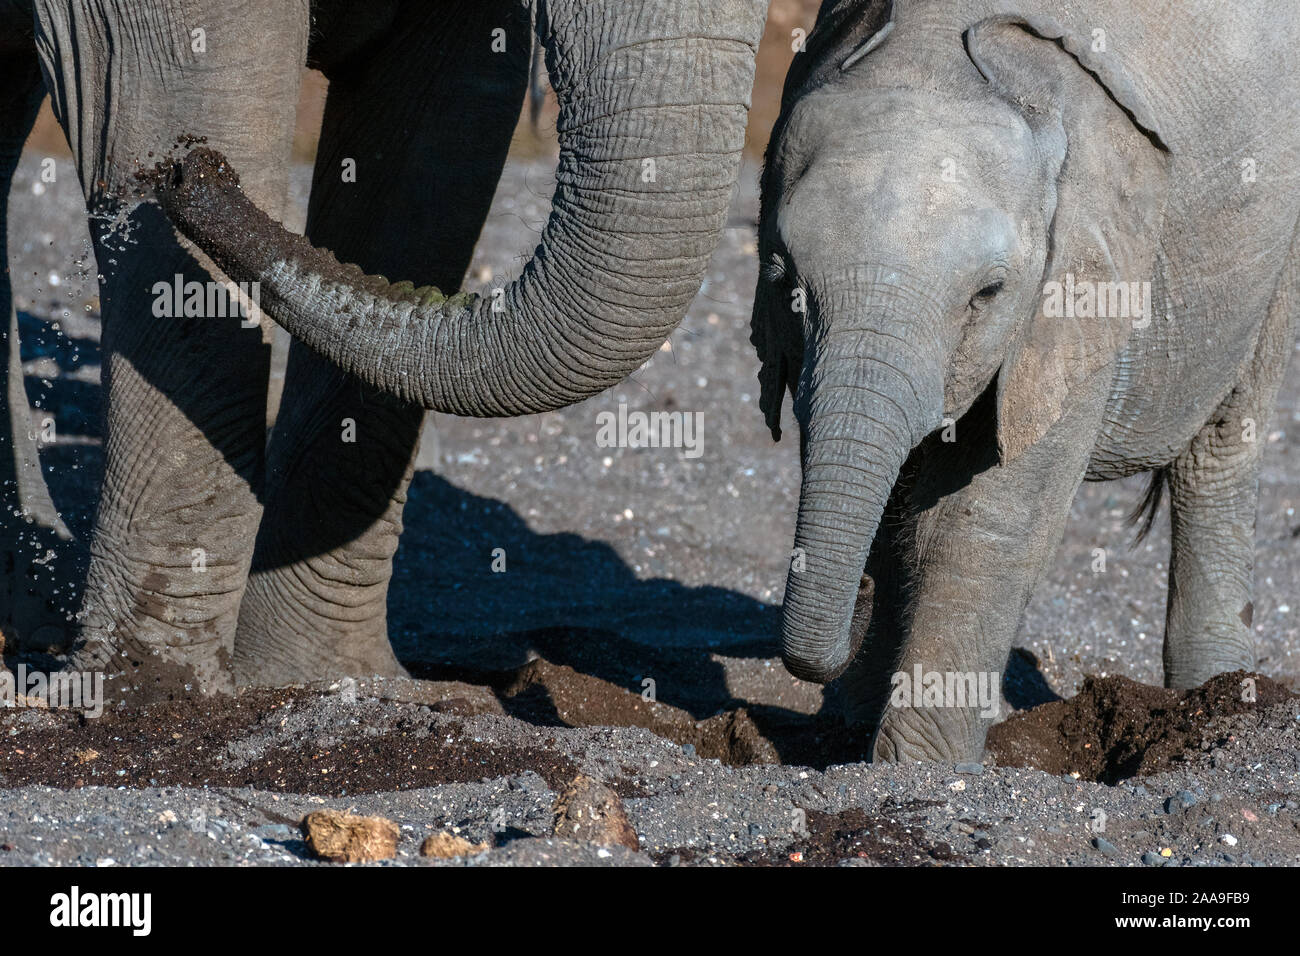 Elefanten graben nach Wasser Botswana Stockfoto